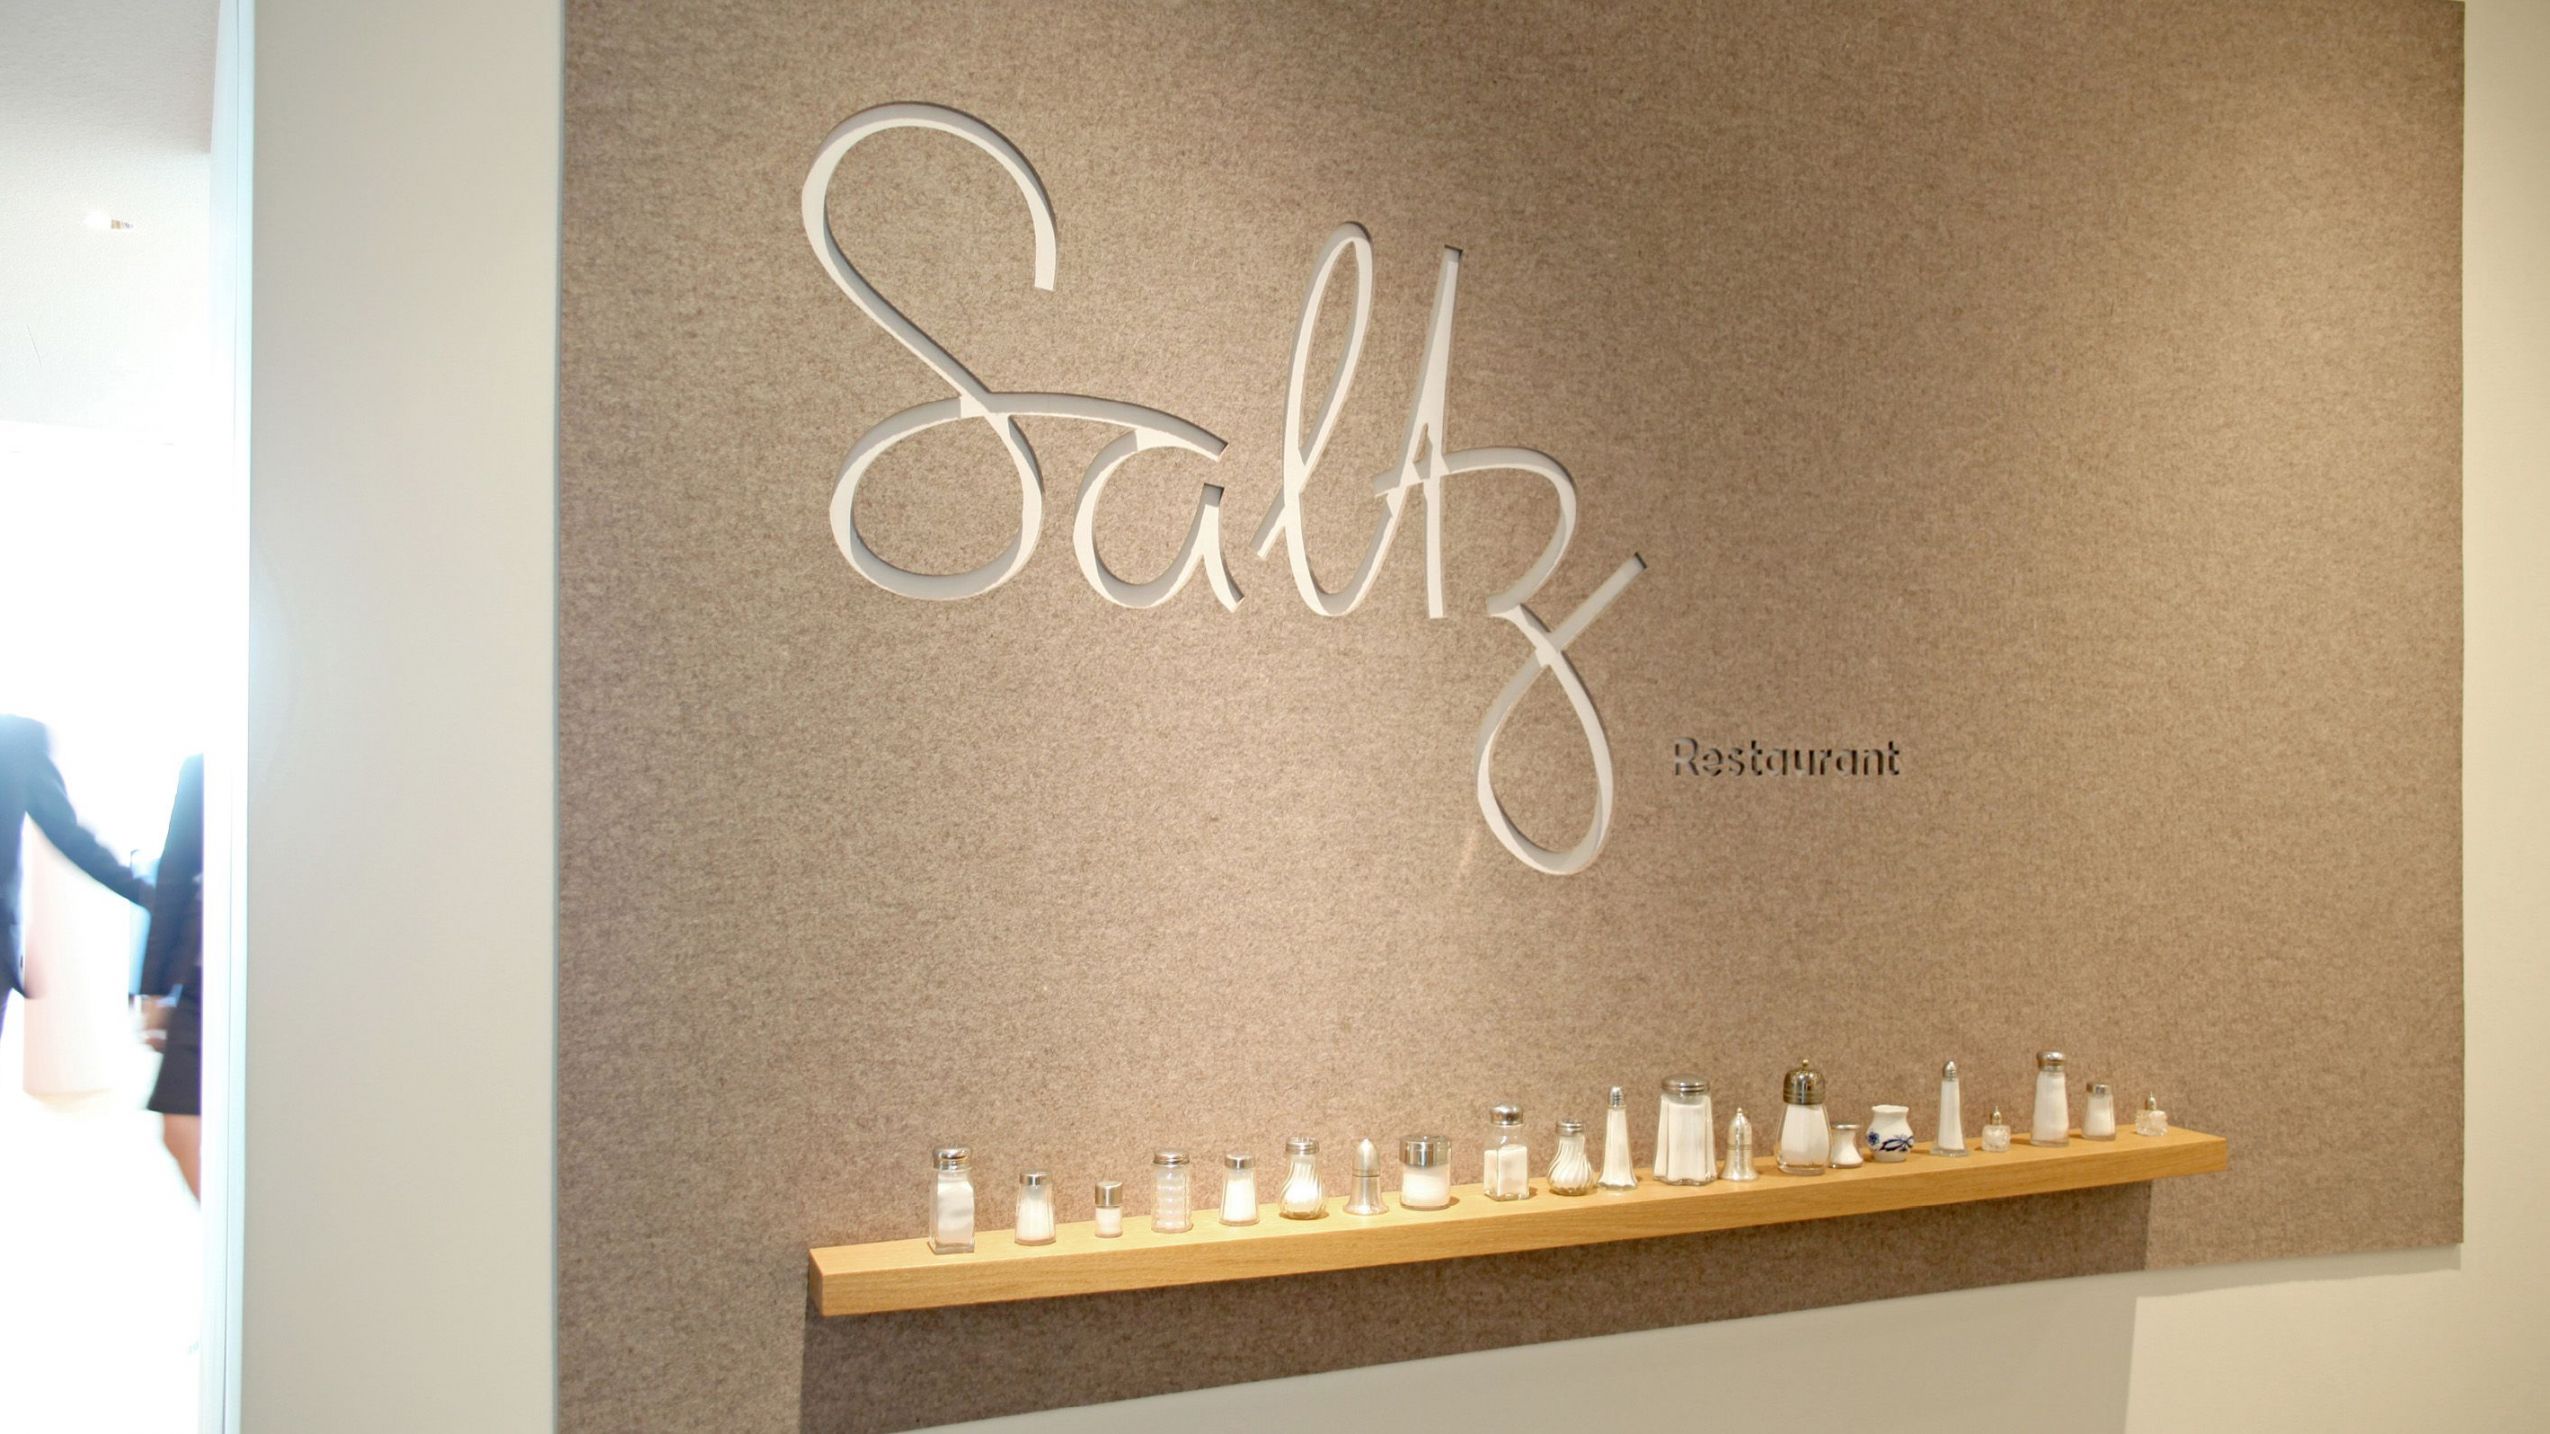 Wandbeschriftung Saltz im Restaurant